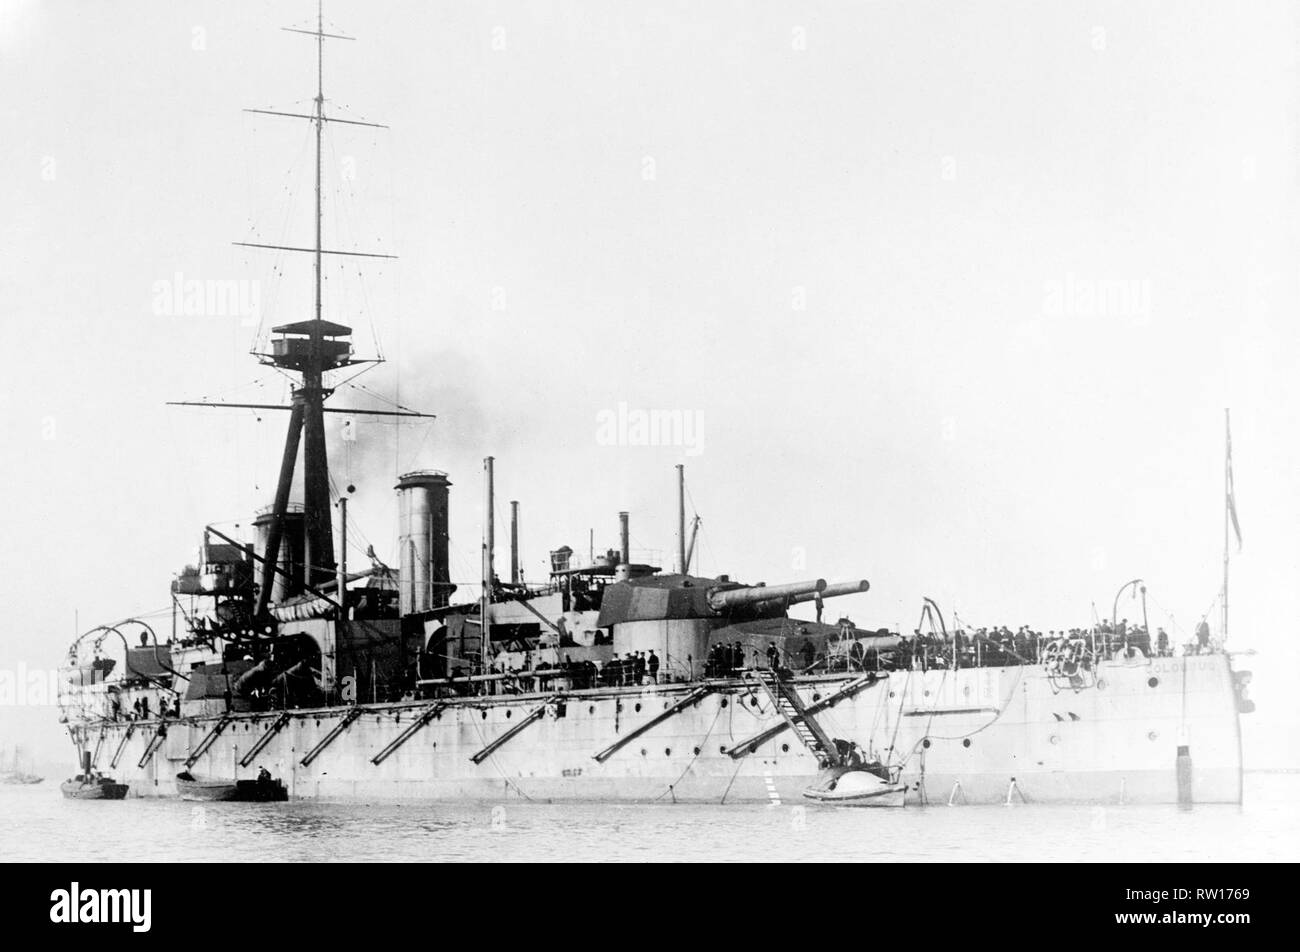 Le HMS Colossus premier navire de deux cuirassés de la classe dreadnought construits pour la Royal Navy en 1910 mise à jour de l'image en utilisant les techniques de retouche et de restauration numérique Banque D'Images